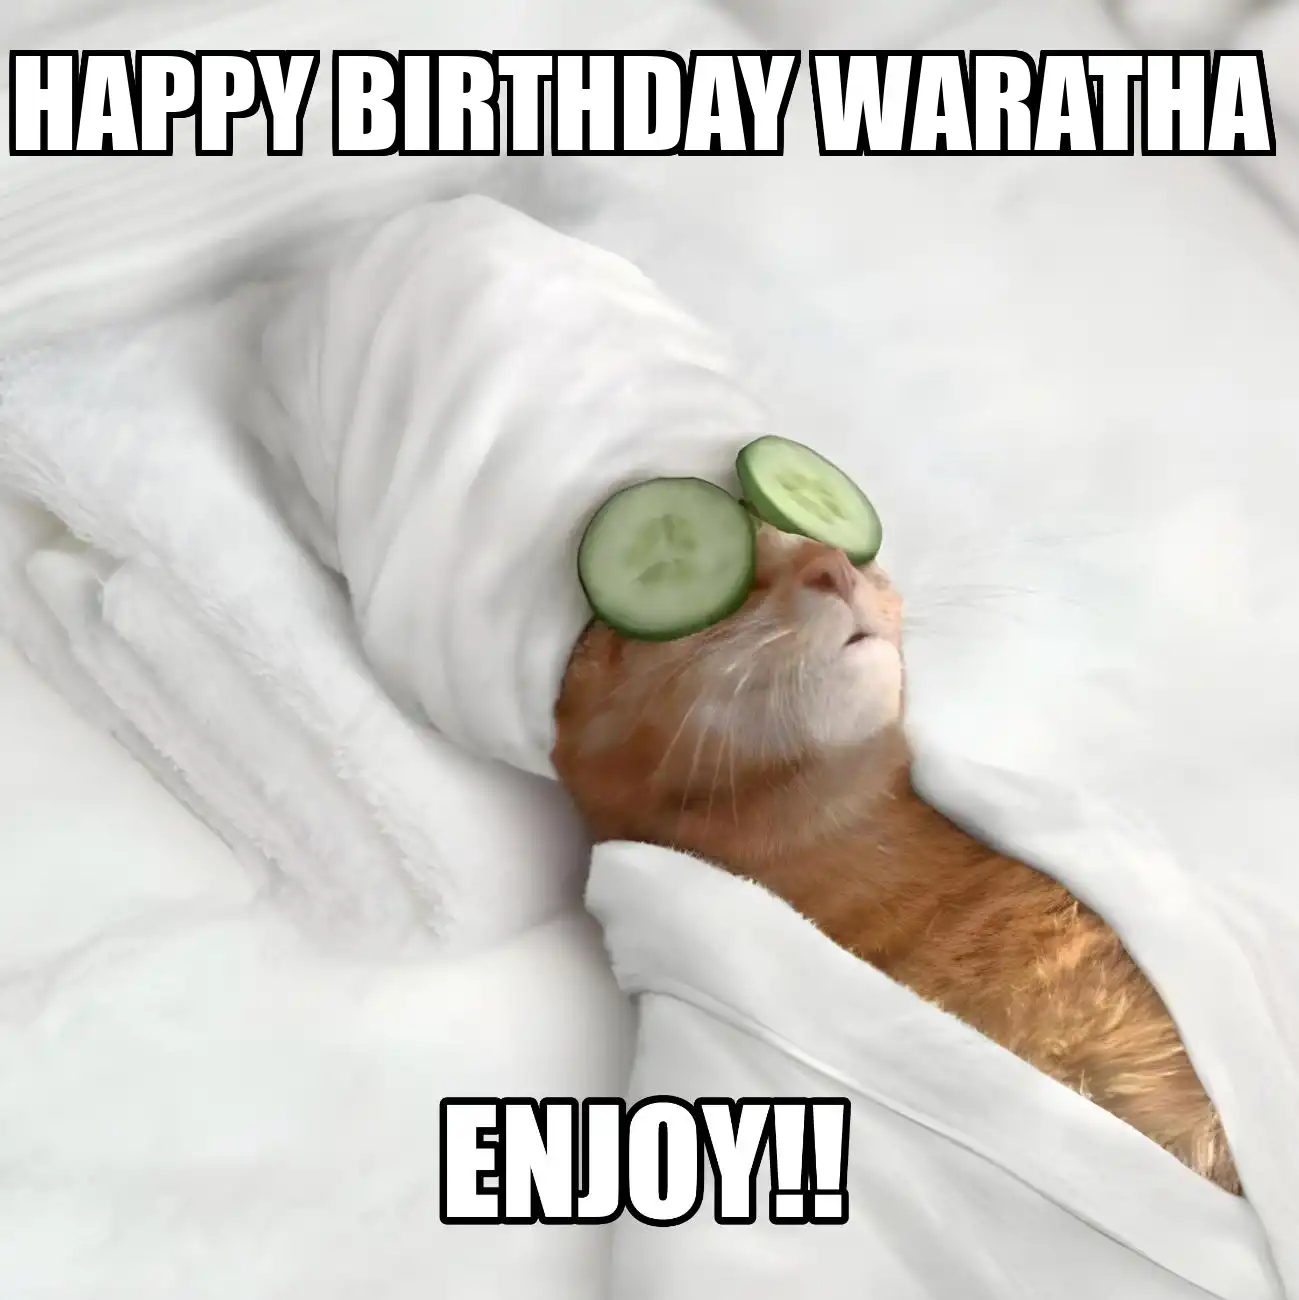 Happy Birthday Waratha Enjoy Cat Meme